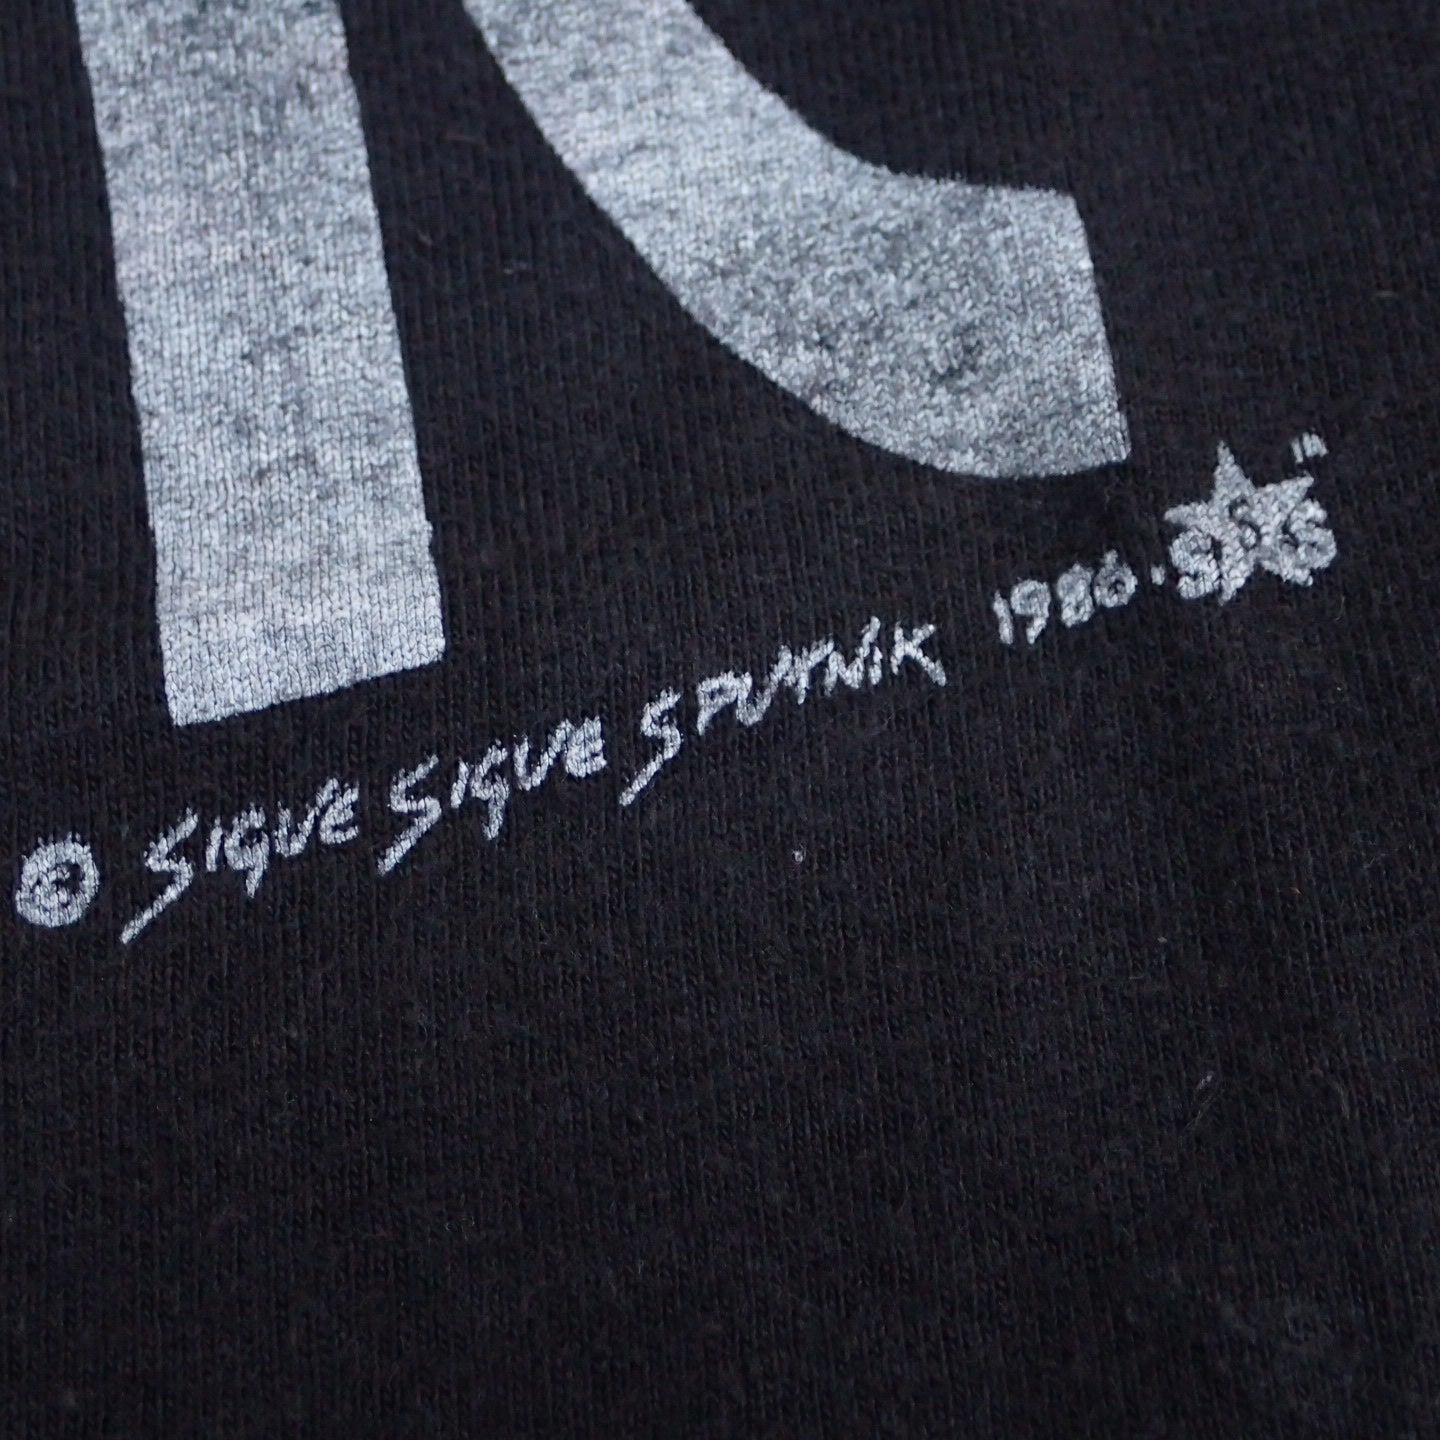 80s Sigue Sigue Sputnik T-shirt "Flaunt It Tee"